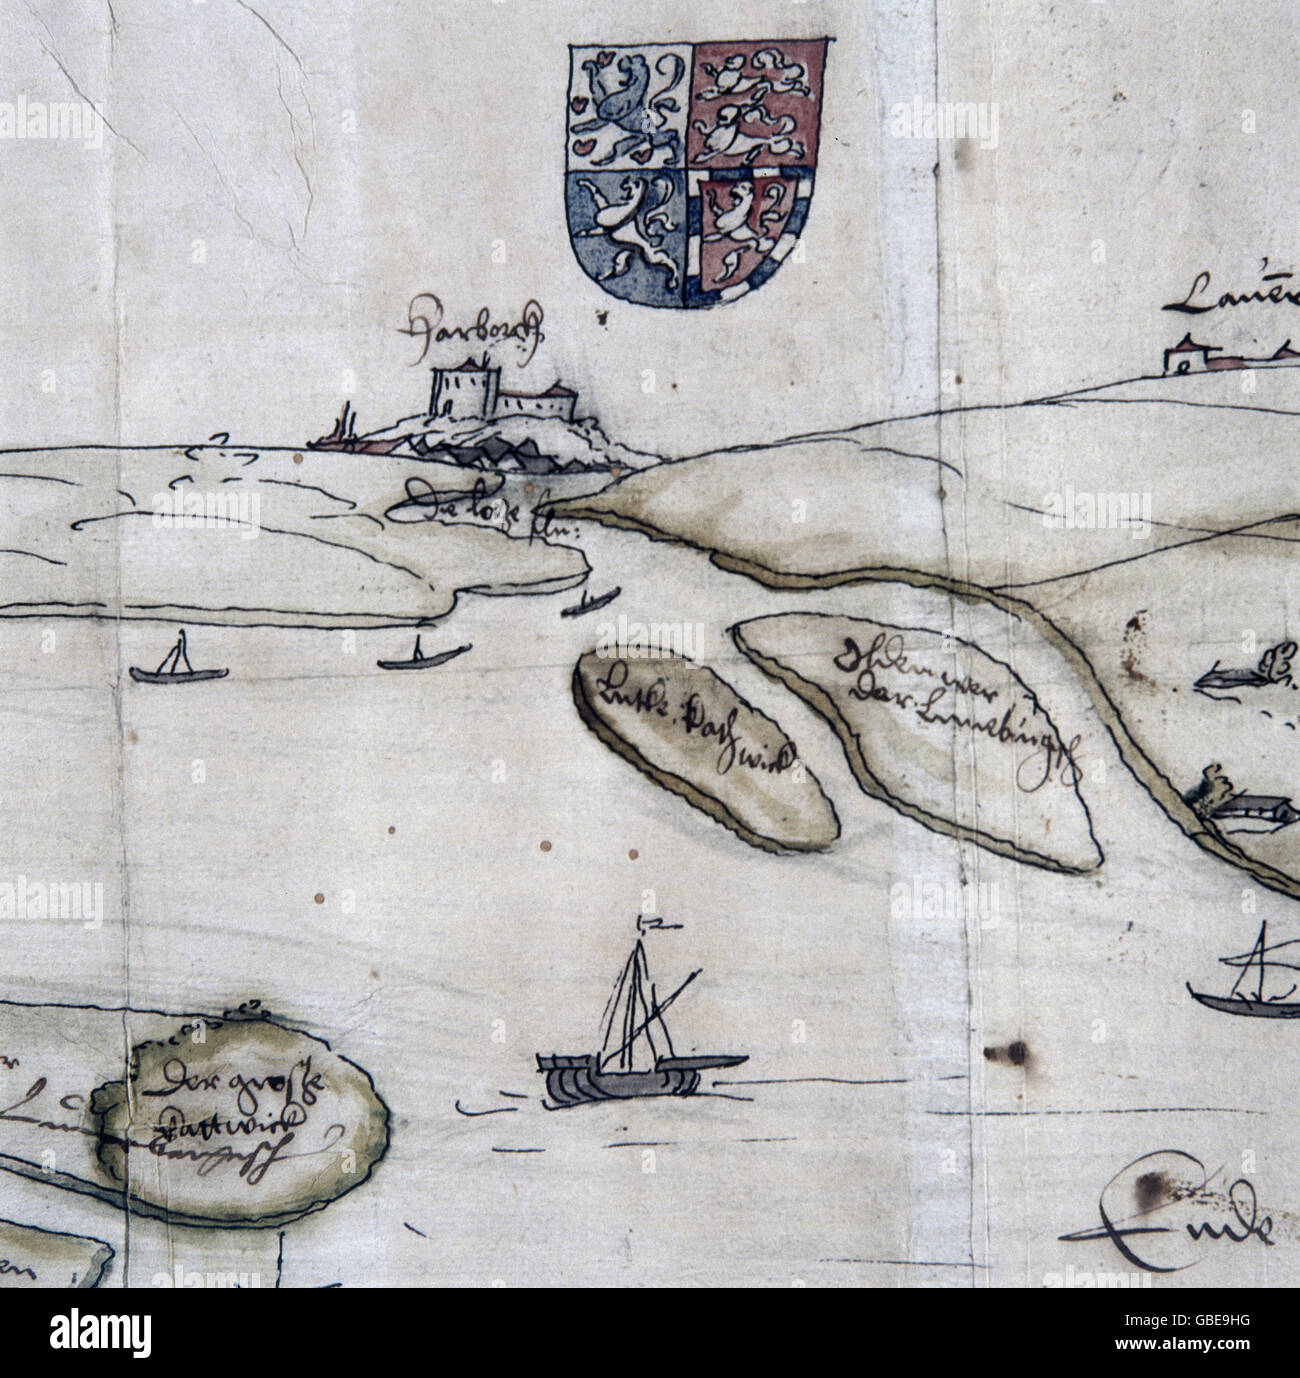 Cartografia, mappe, mappa del fiume Elba, circa 1555, diritti aggiuntivi-clearences-non disponibile Foto Stock